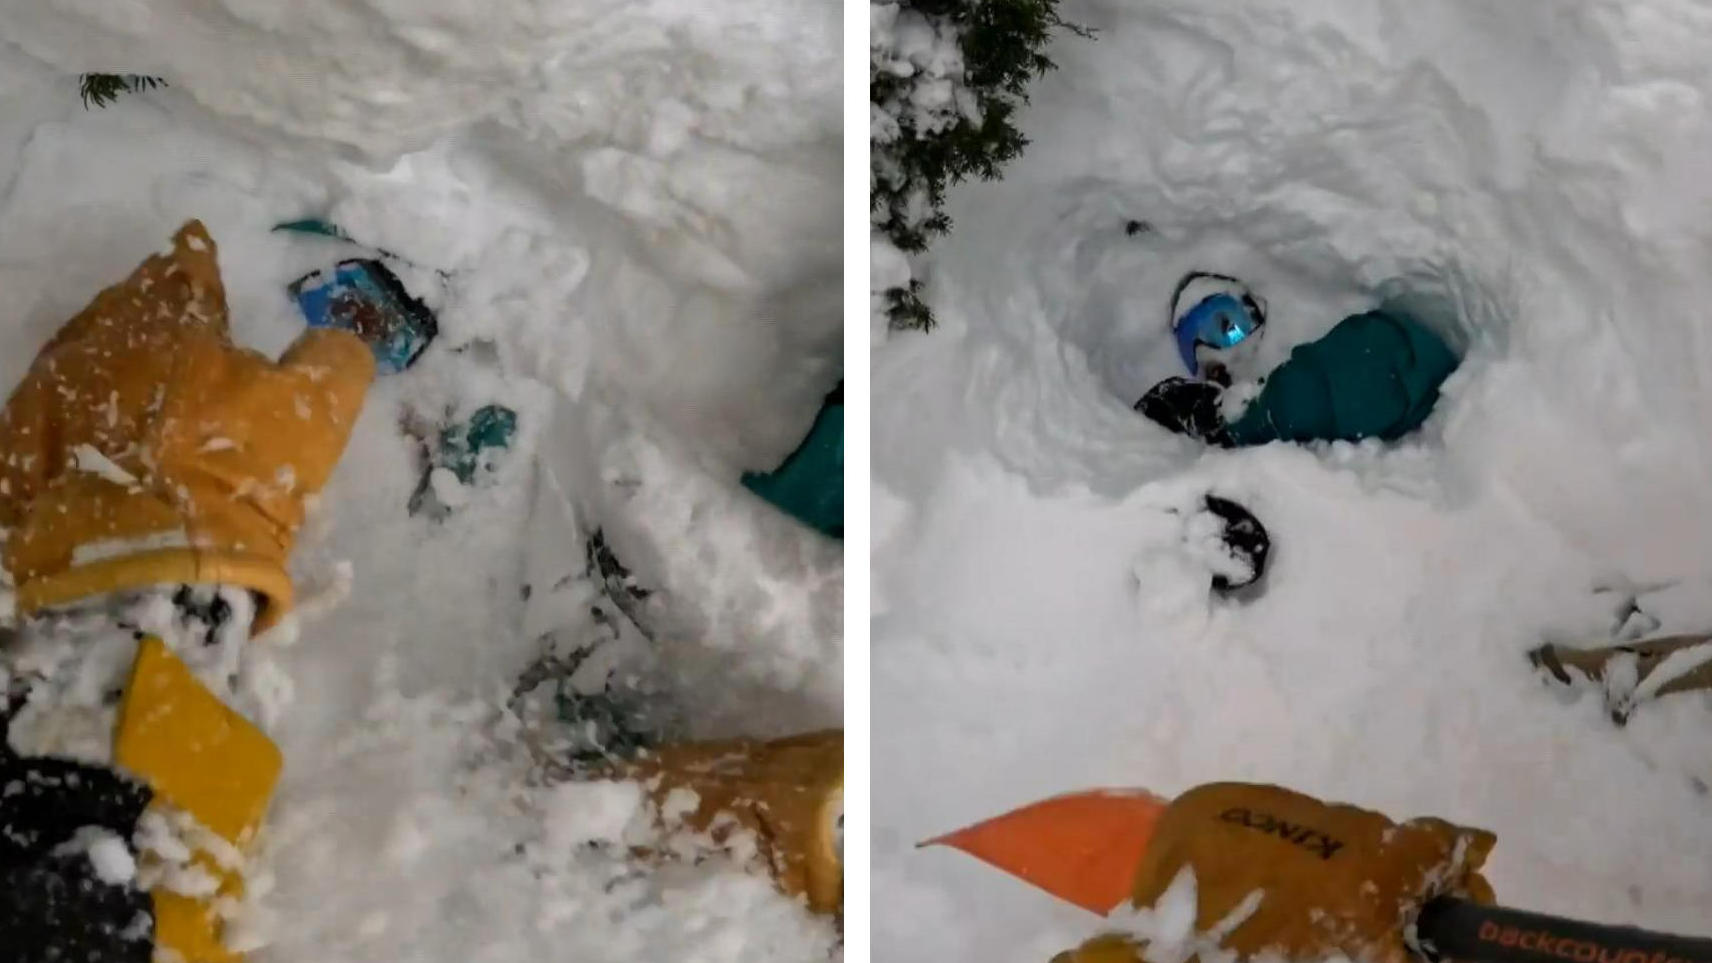 Spektakulär! Skifahrer rettet Snowboarder das Leben Unter Schnee begraben!